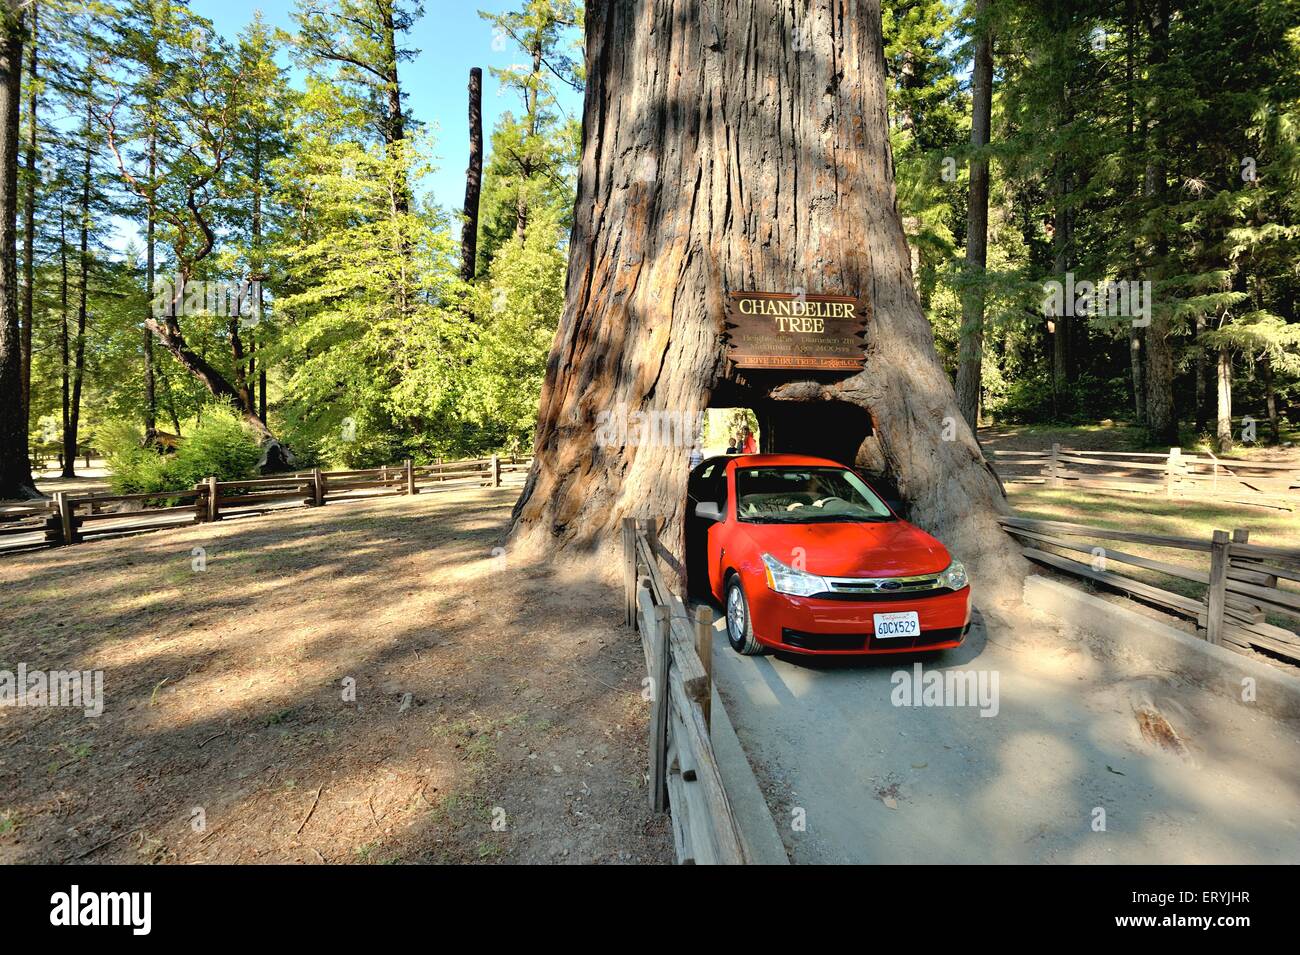 Auto durch Kronleuchter Baum in Küstenmammutbaum Wald ; North California ;  USA , Vereinigte Staaten von Amerika Stockfotografie - Alamy